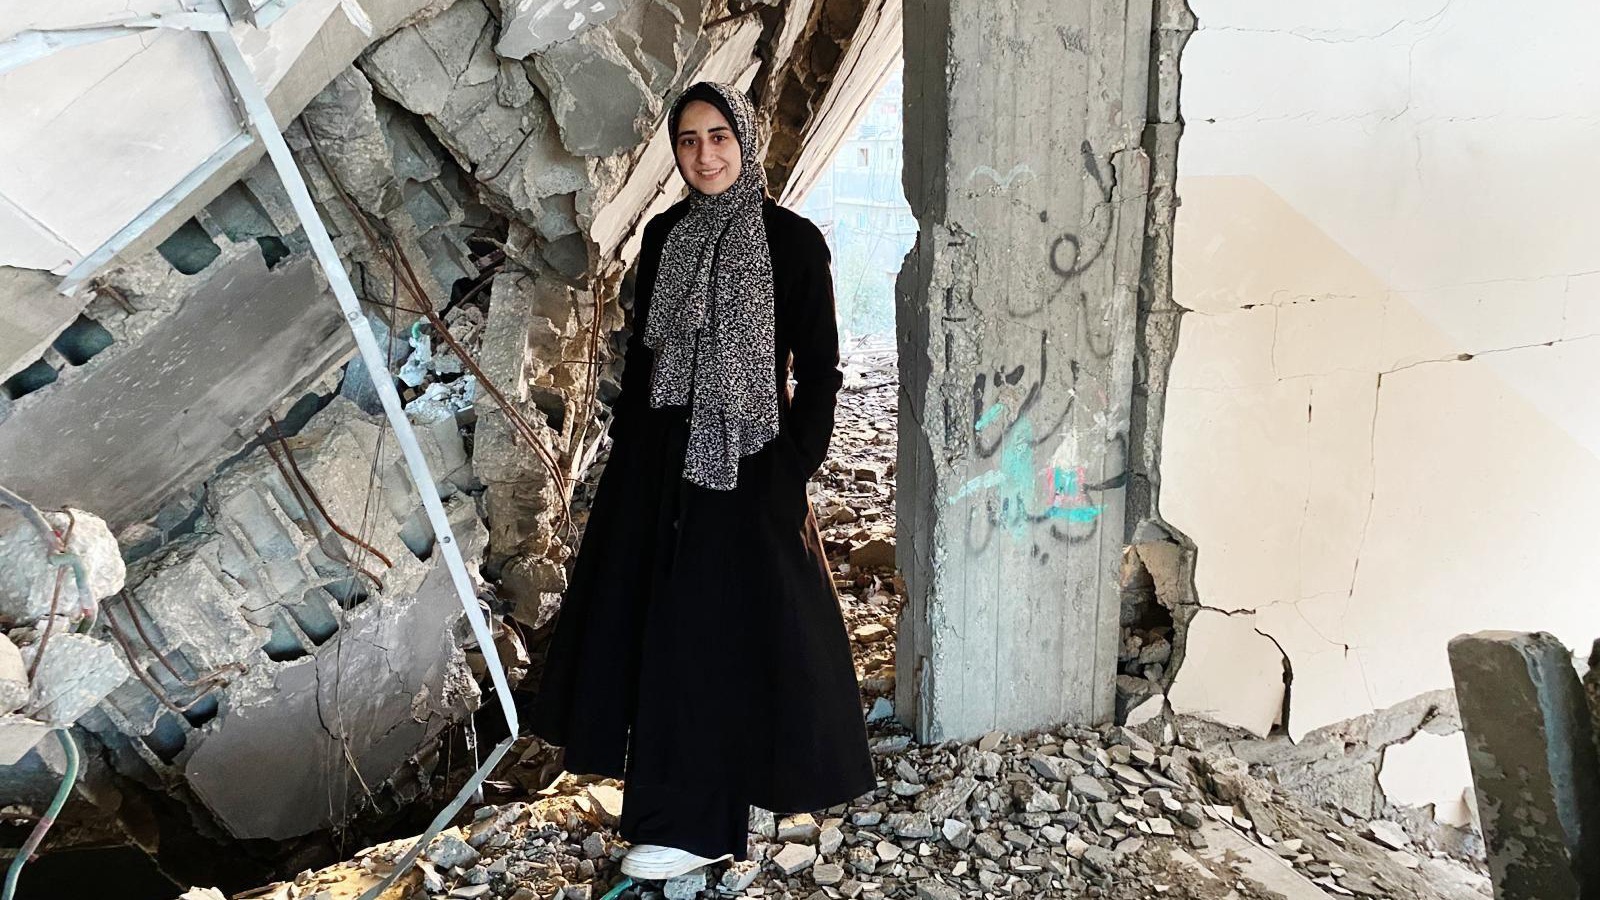 علا أبو ورد، 27 عاماً، اختارت وعائلتها العودة إلى منزلهم المدمر واستصلاح غرفة واحدة للعيش فيها